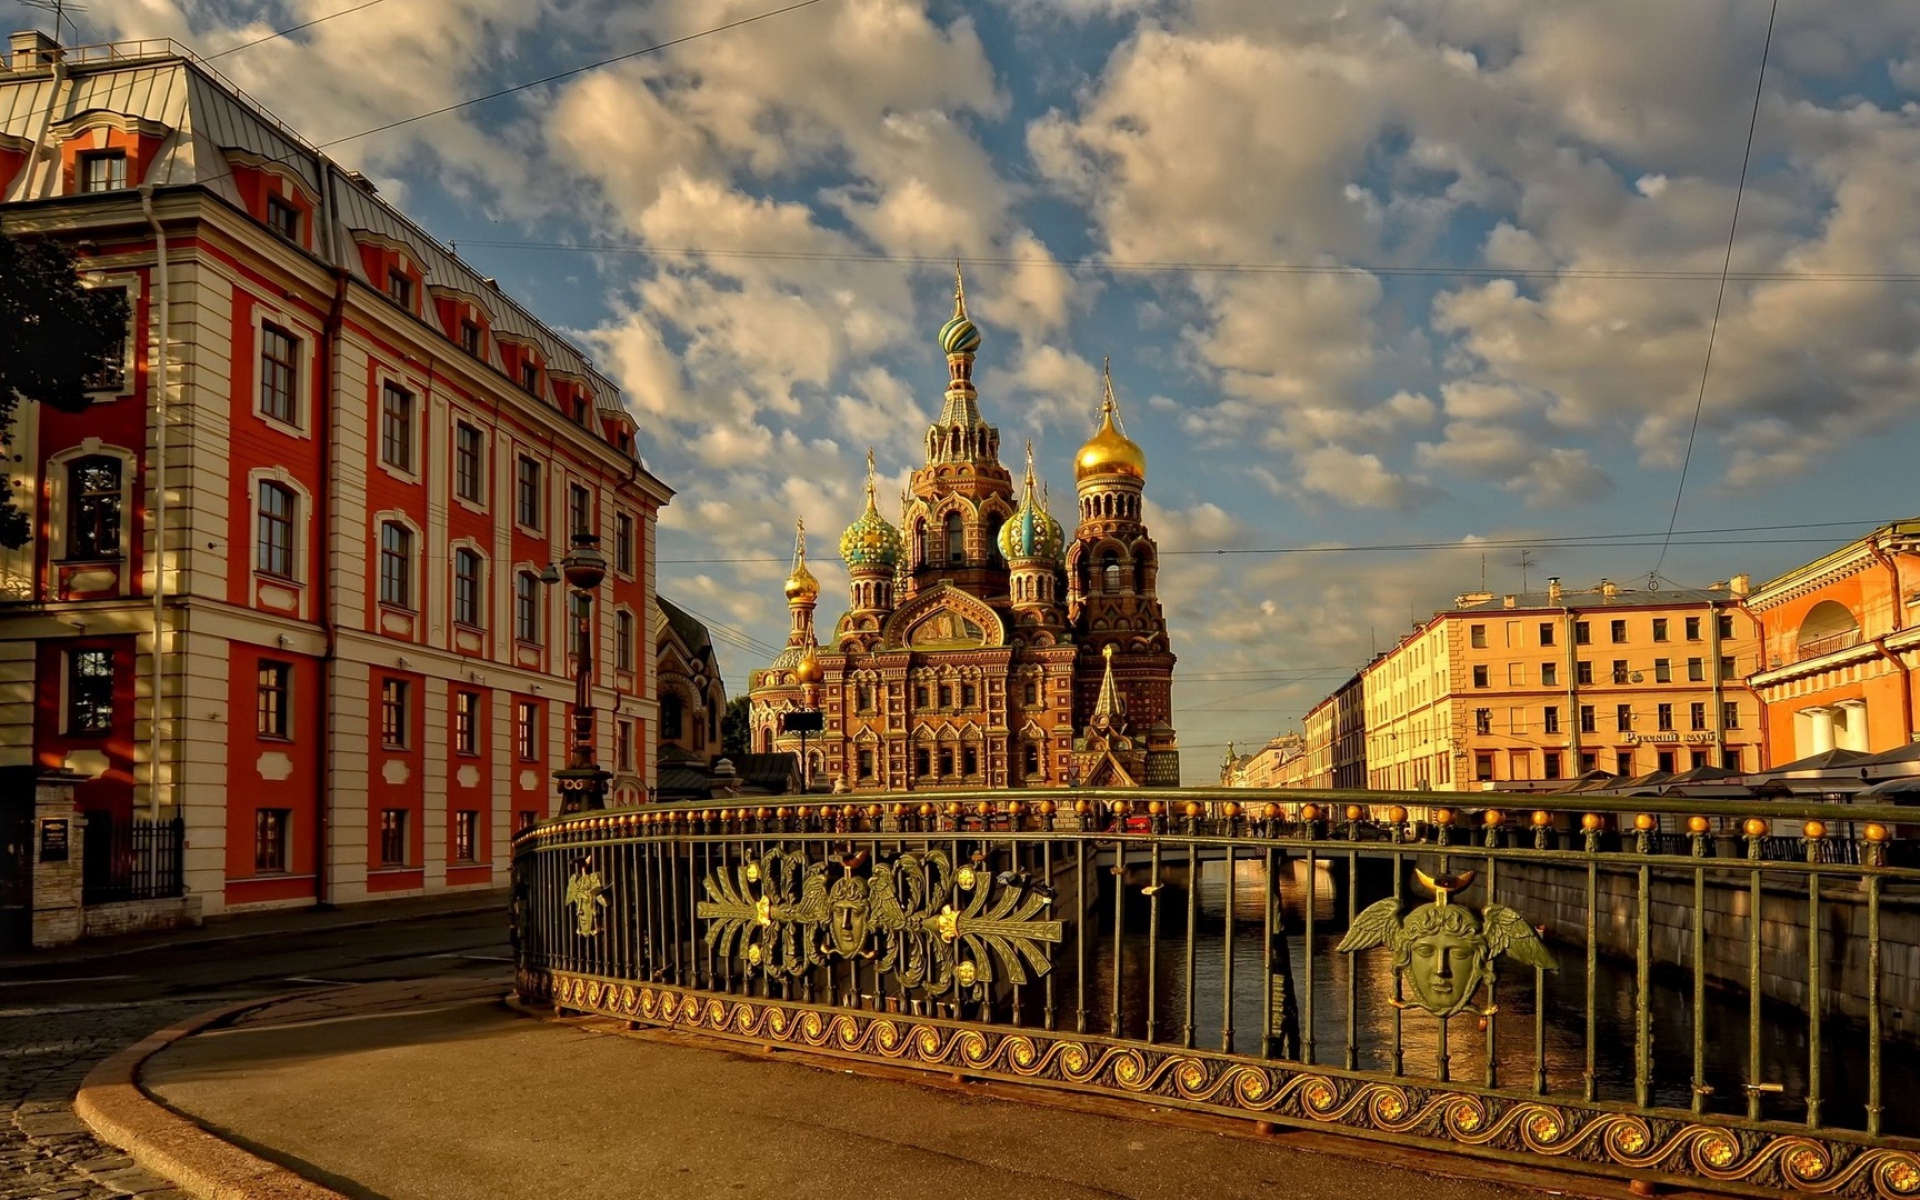 Картинки Россия, Санкт-Петербург, церковь, мост, здание, улица фото и обои на рабочий стол